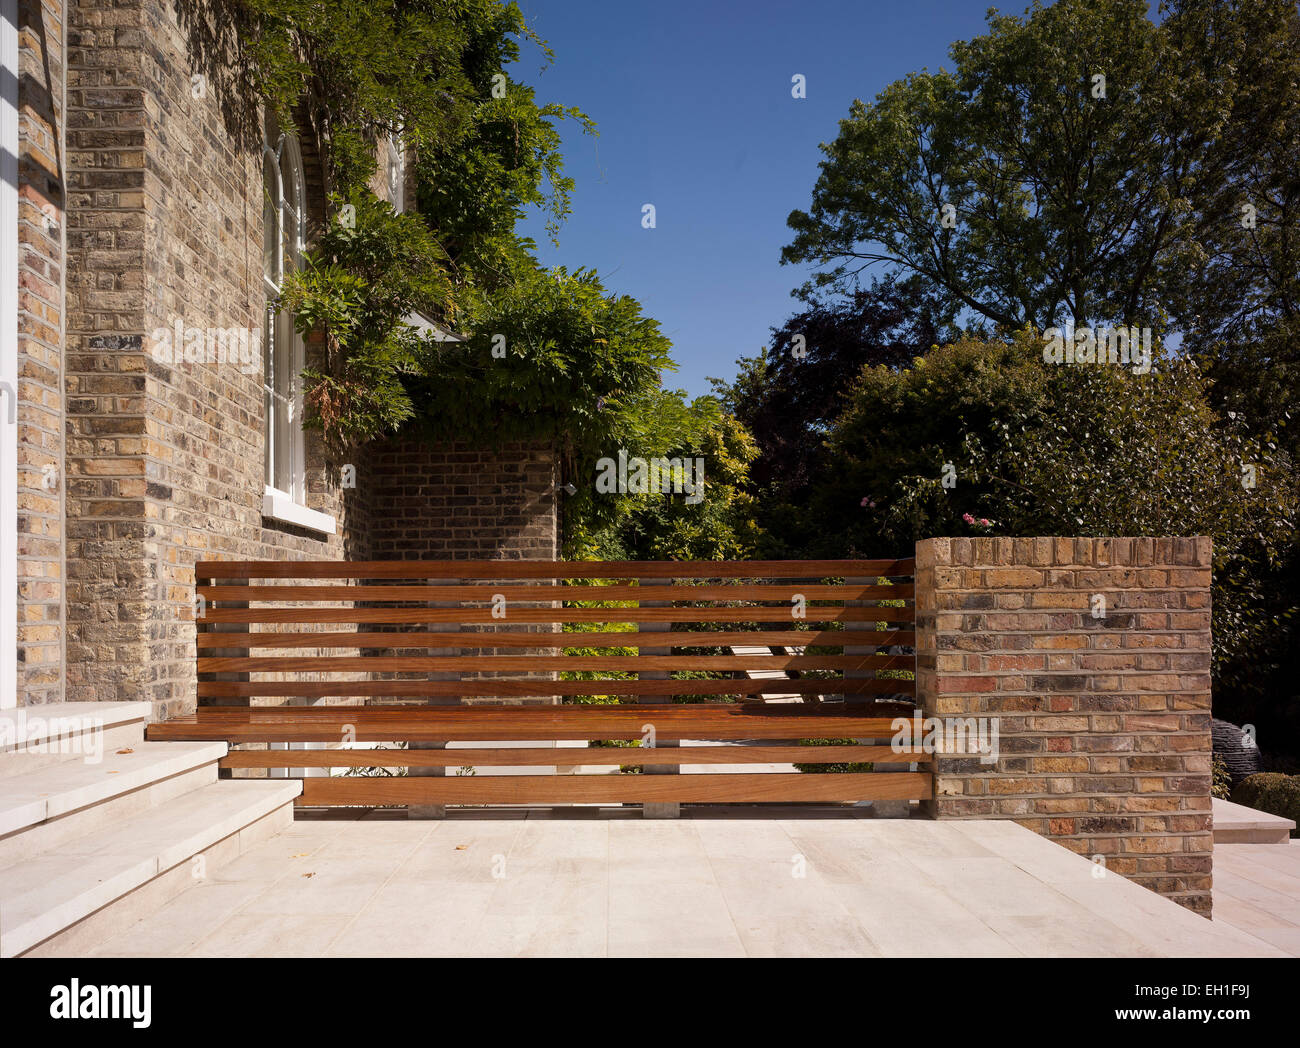 Chambre Shooters Hill, Londres, Royaume-Uni. Architecte : Charles Barclay architectes, 2012. Terrasse en pierre avec le bois extérieur Banque D'Images